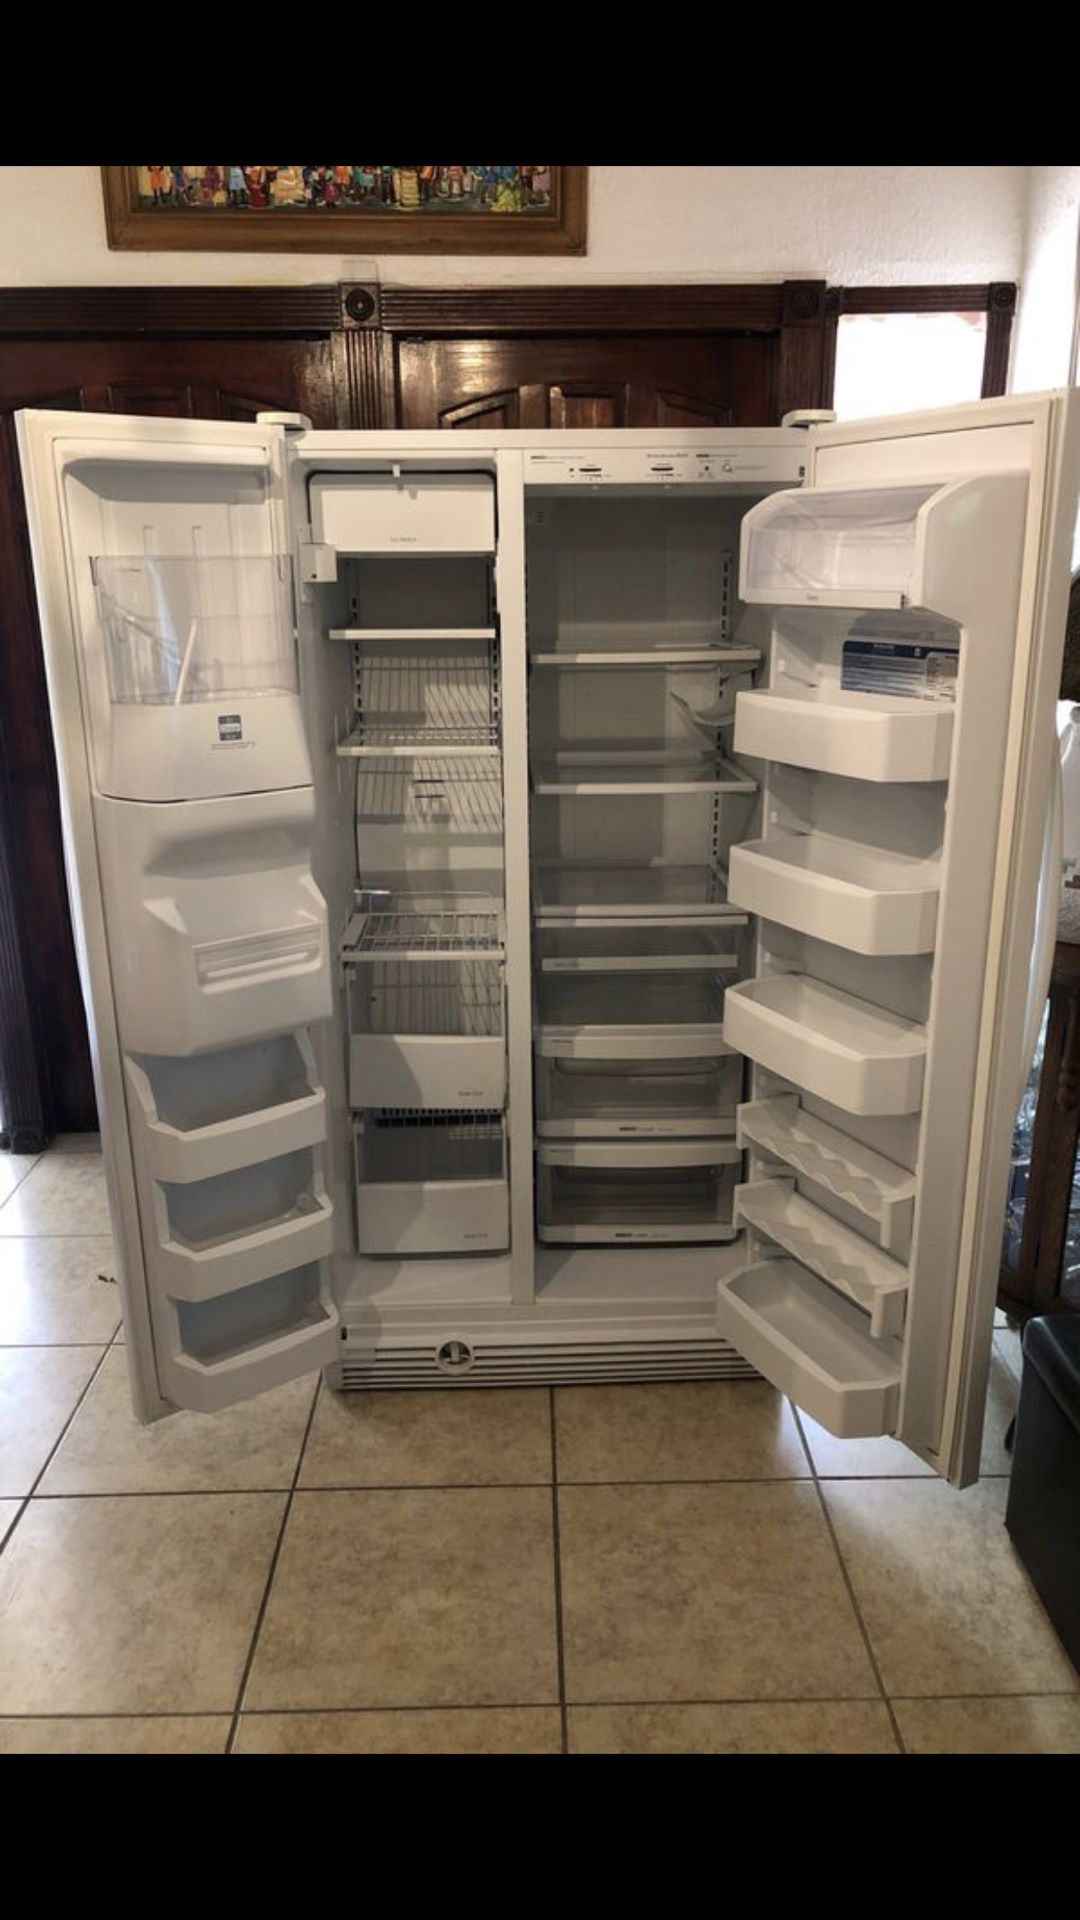 Kitchen Aid fridge refrigerator freezer